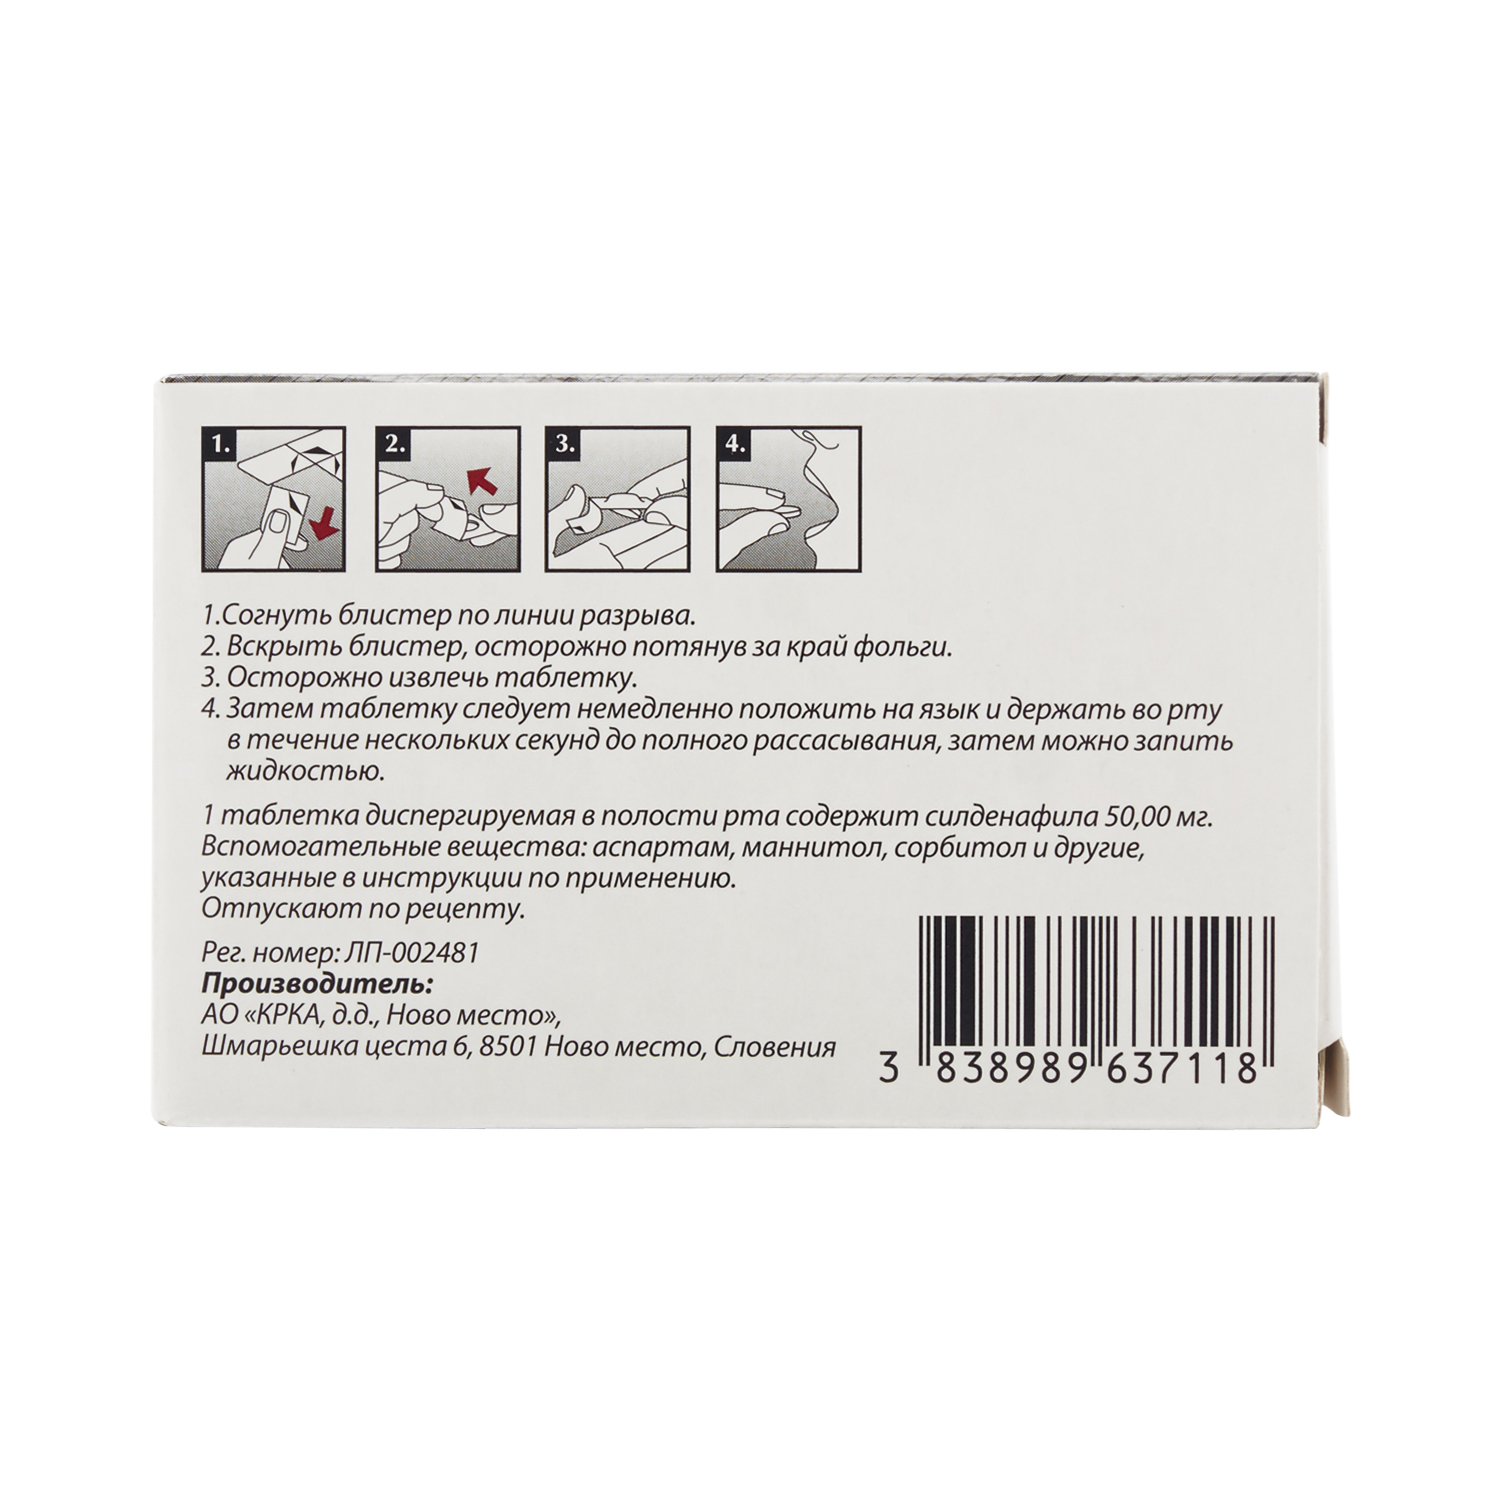 Визарсин Ку-таб Таблетки диспергируемые в полости рта 50 мг 4 шт  .